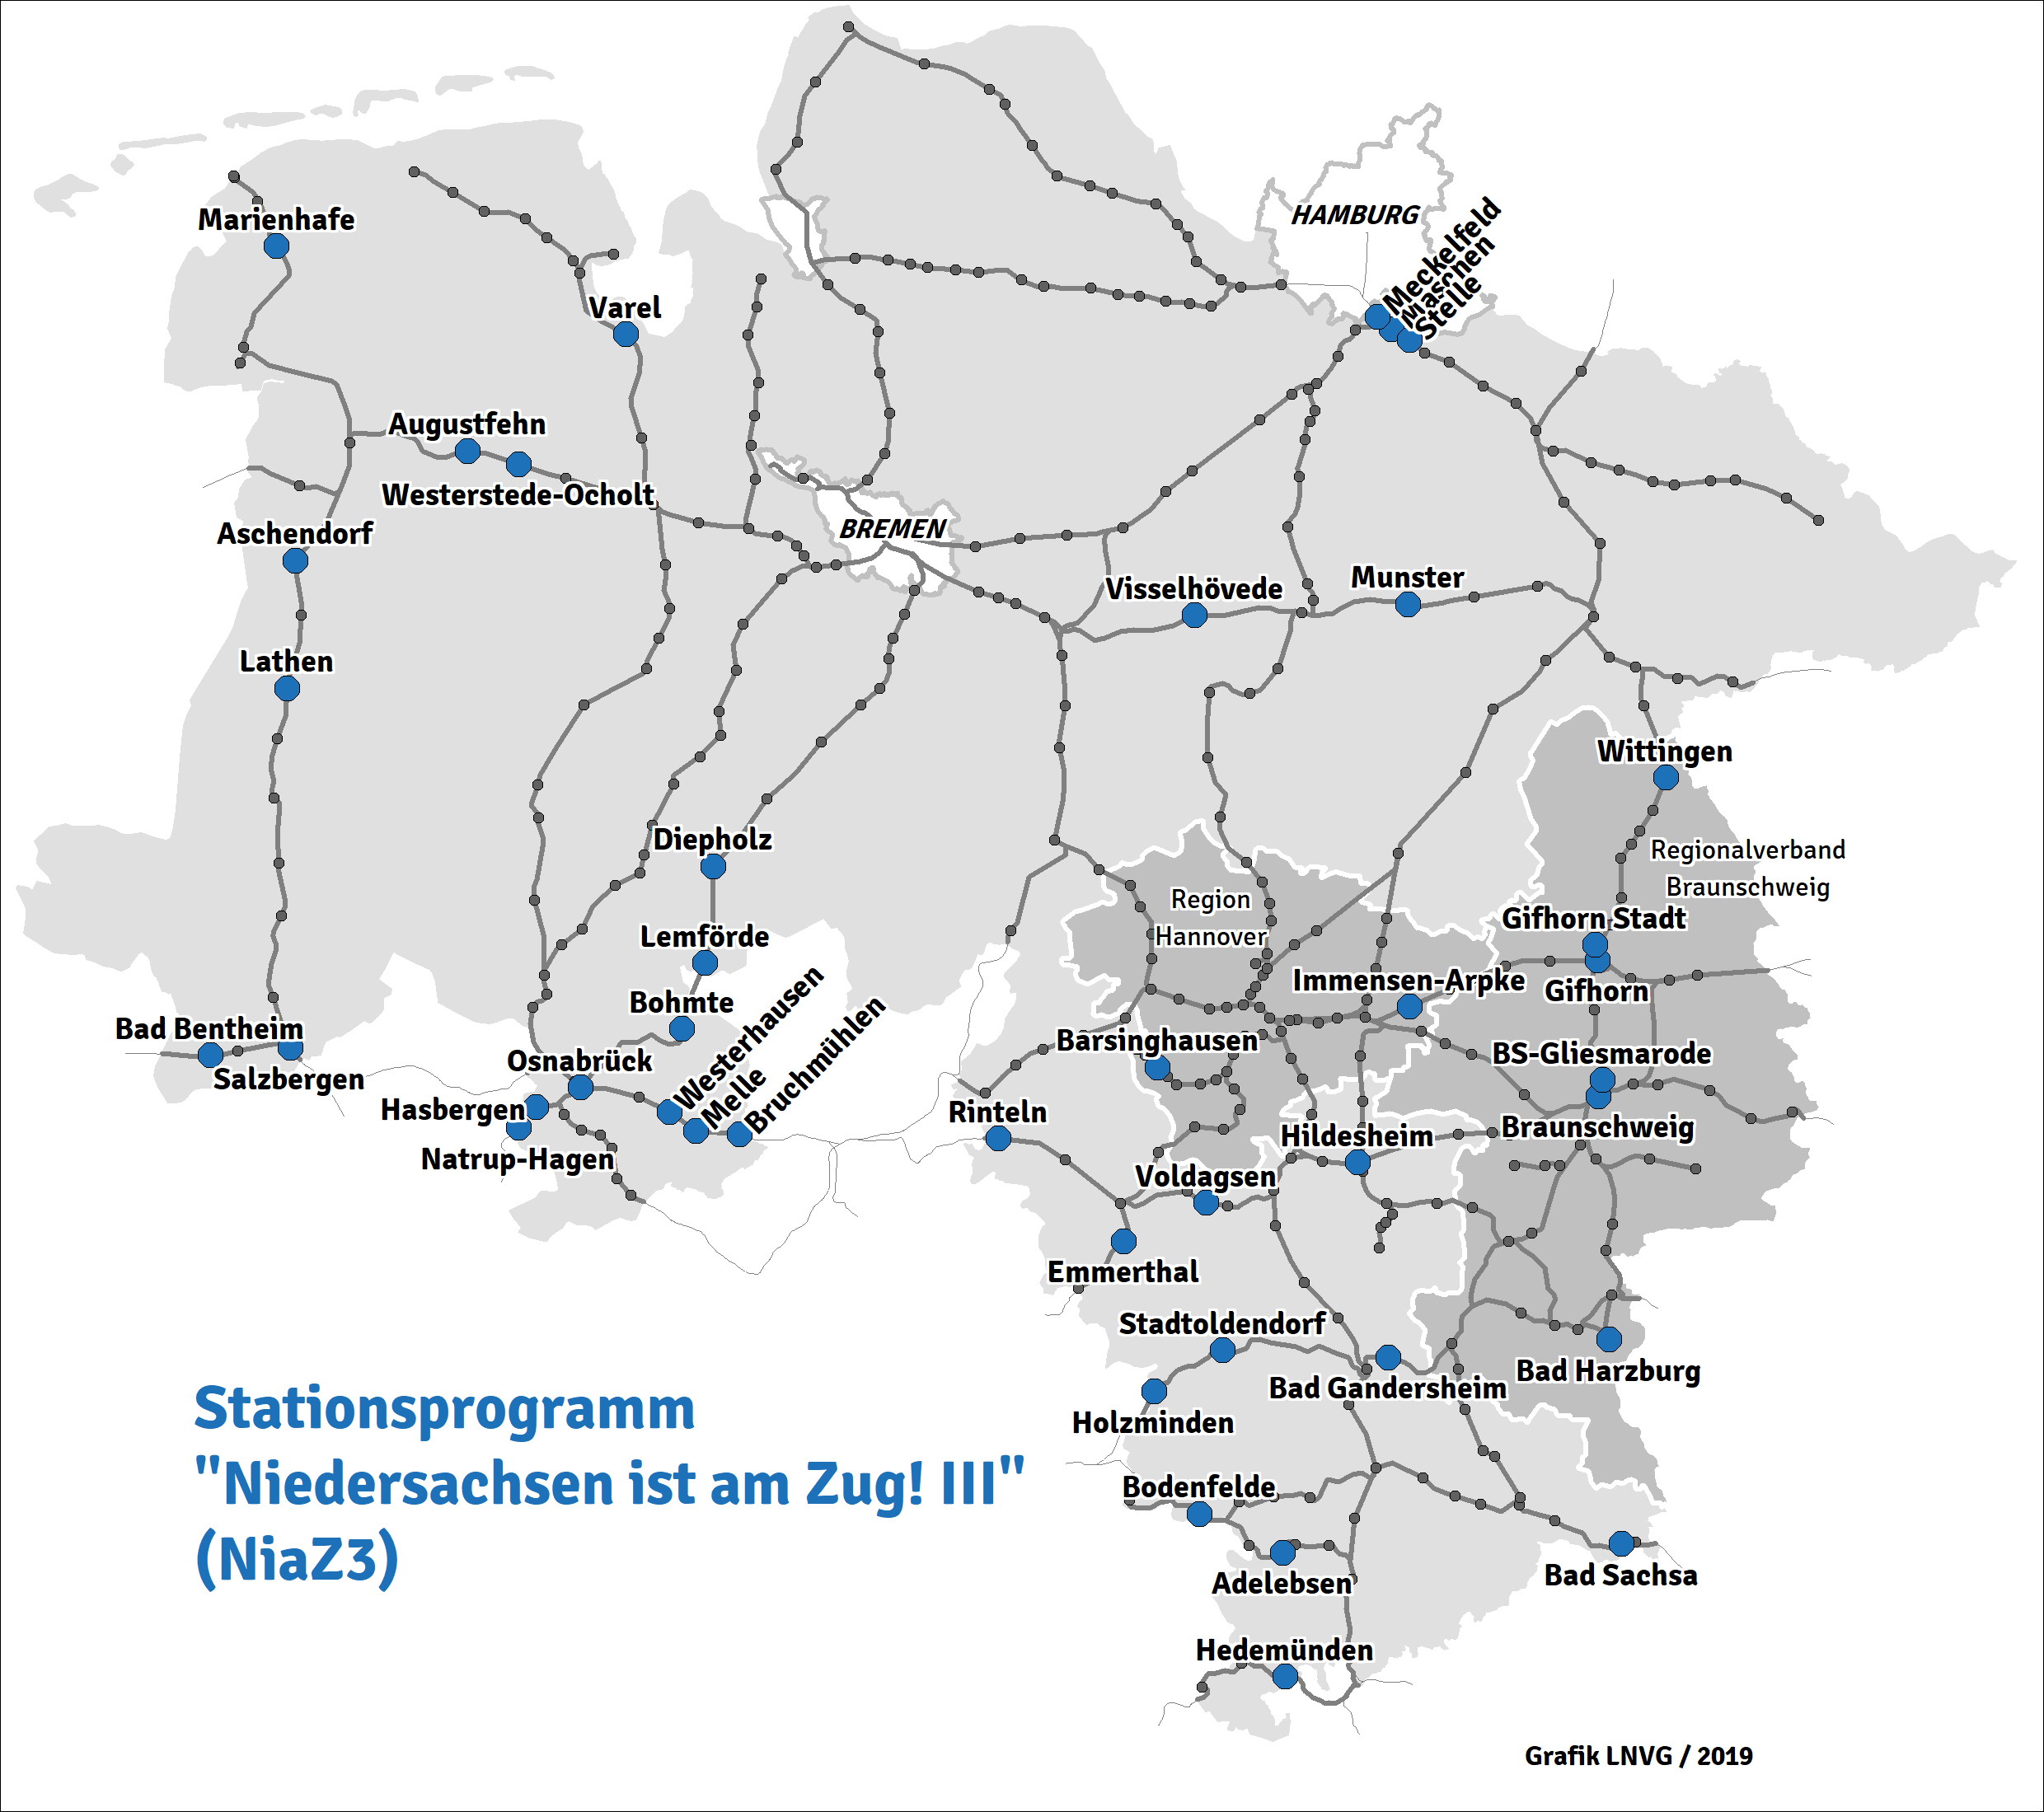 Stationsprogramm Niedersachsen ist am Zug III 